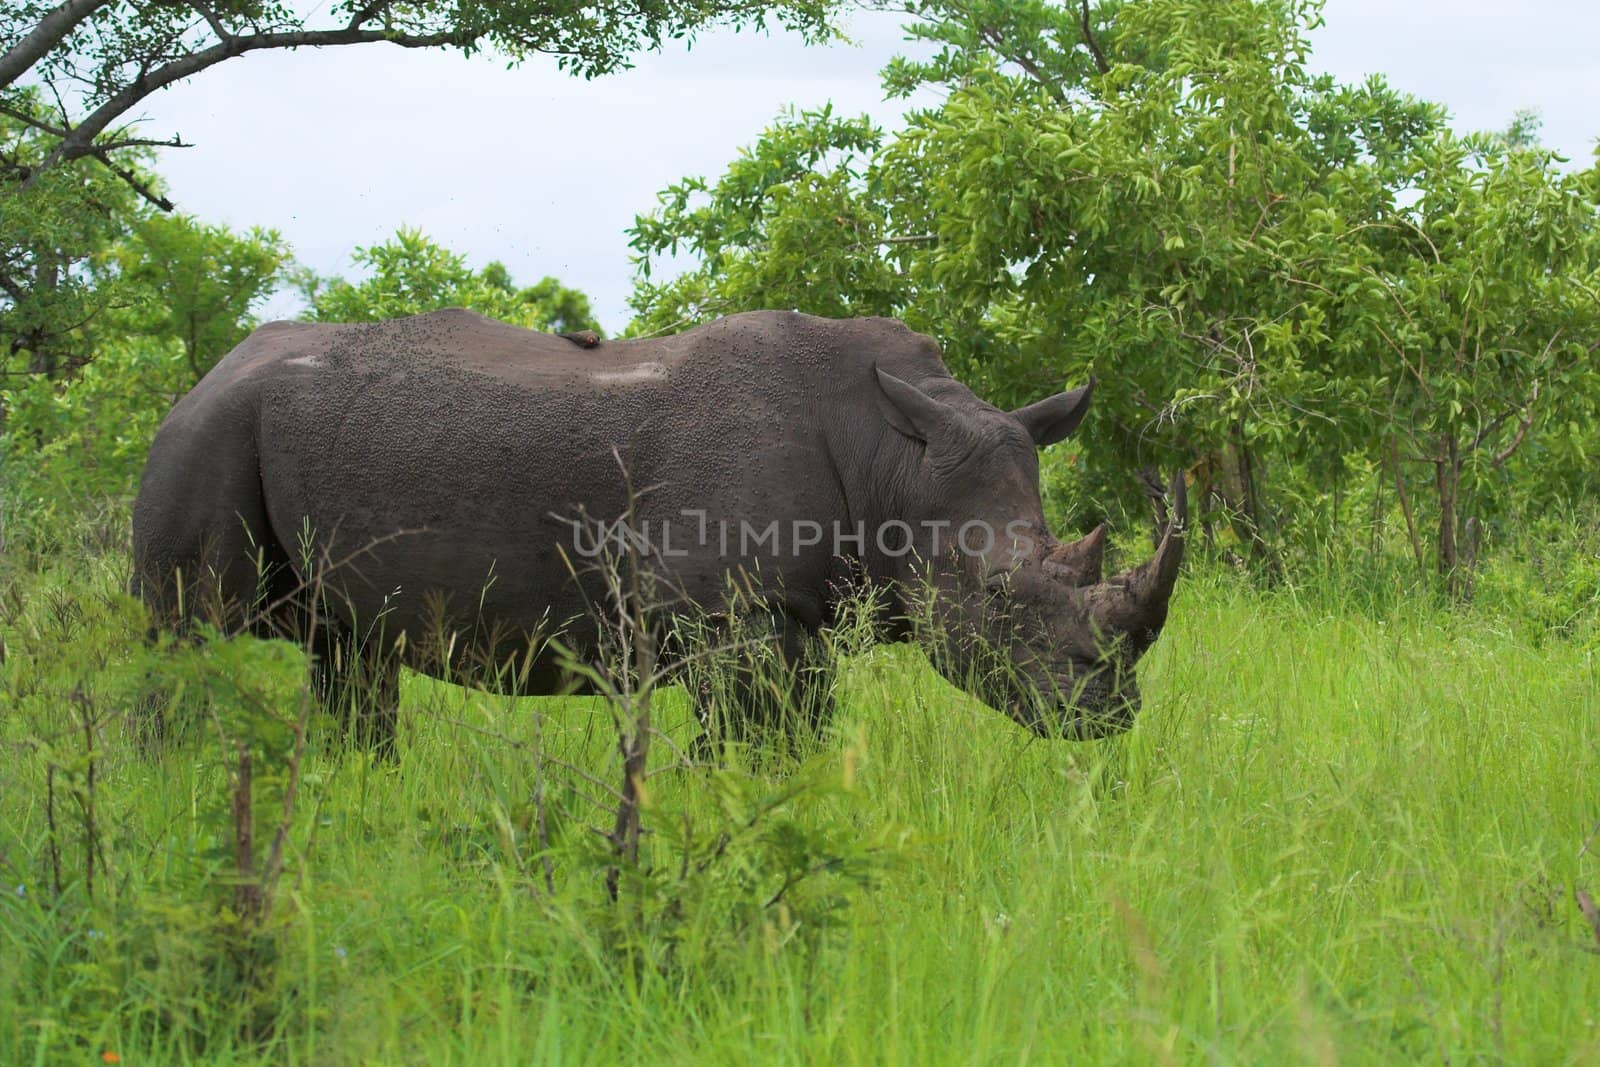 Rhinoceros in the African bush by nightowlza